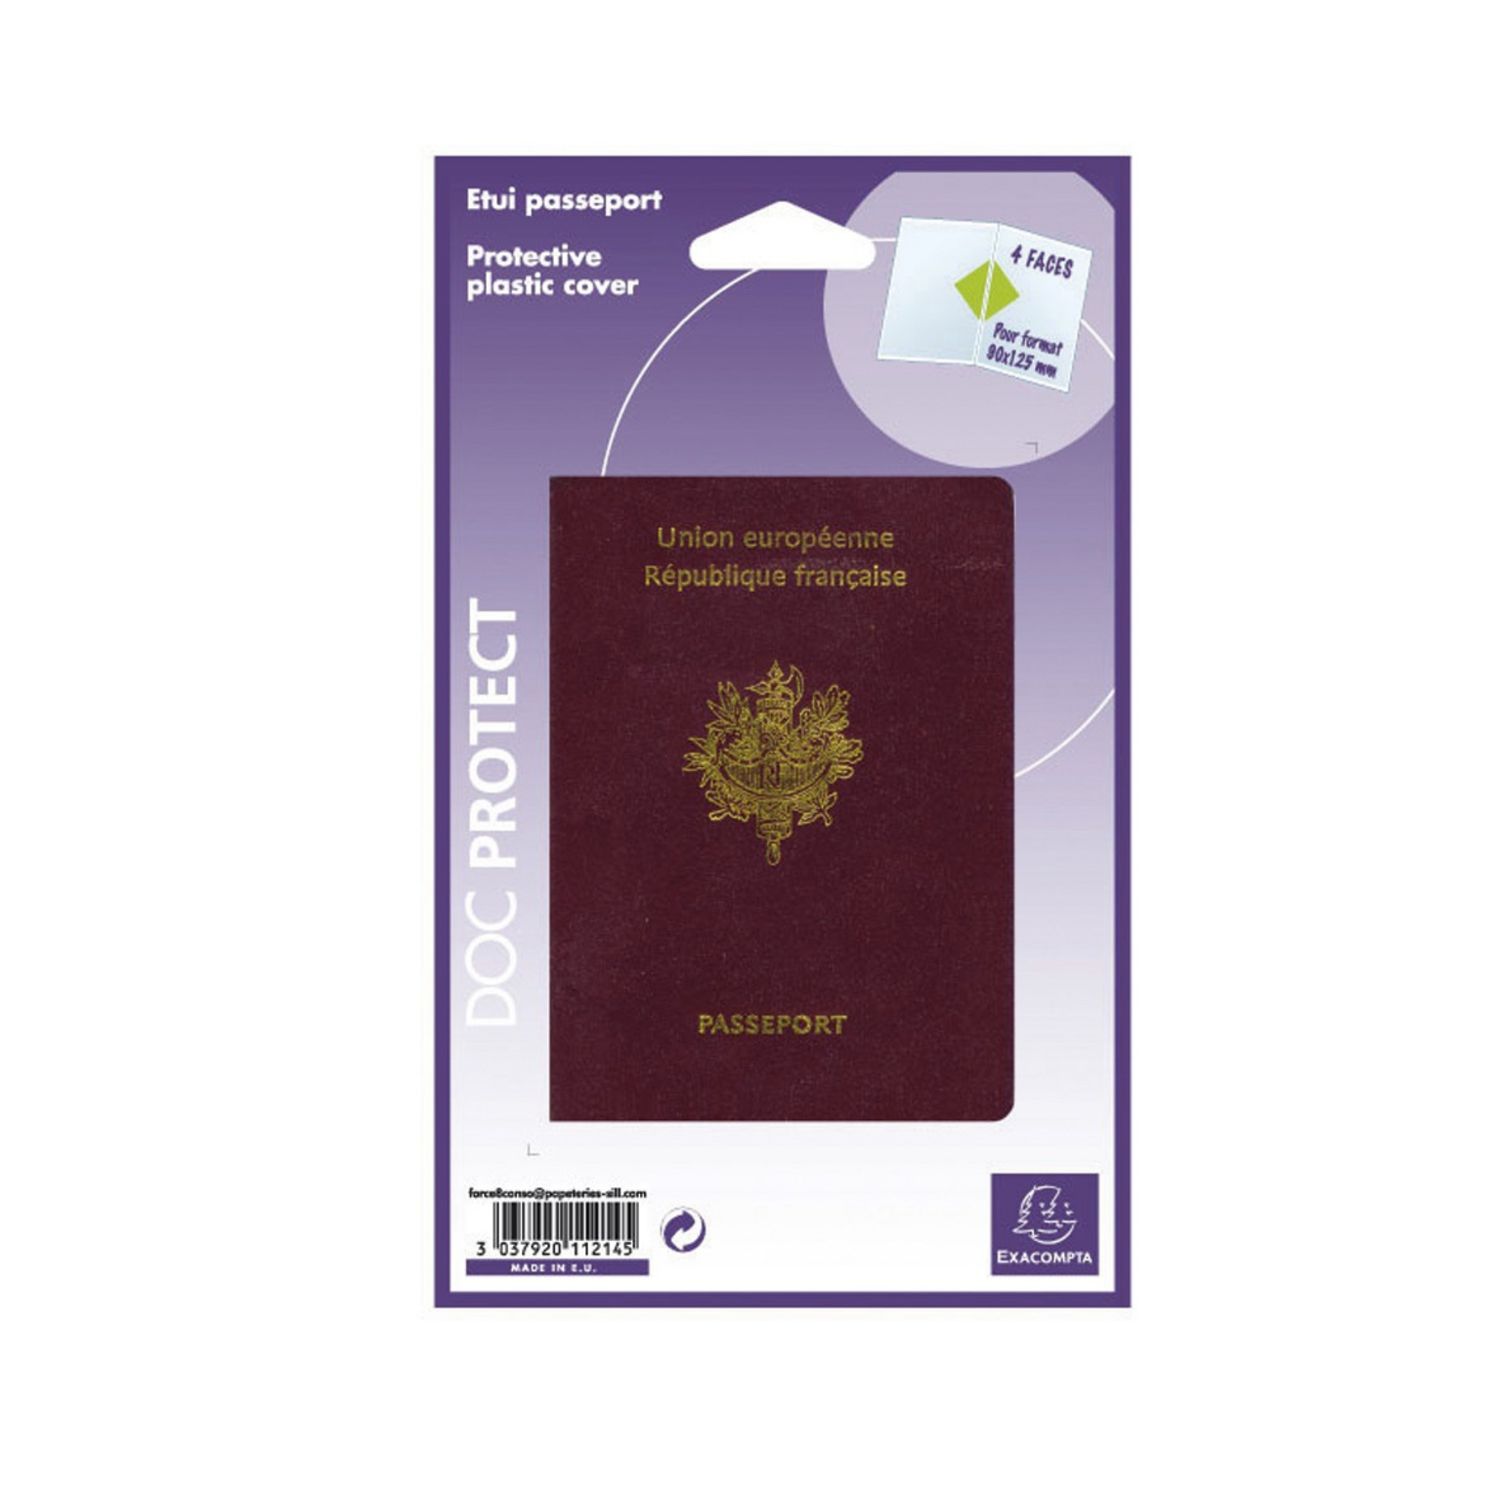 HERMA Pochettes Pour passeport avec 2 rabais 5549N 